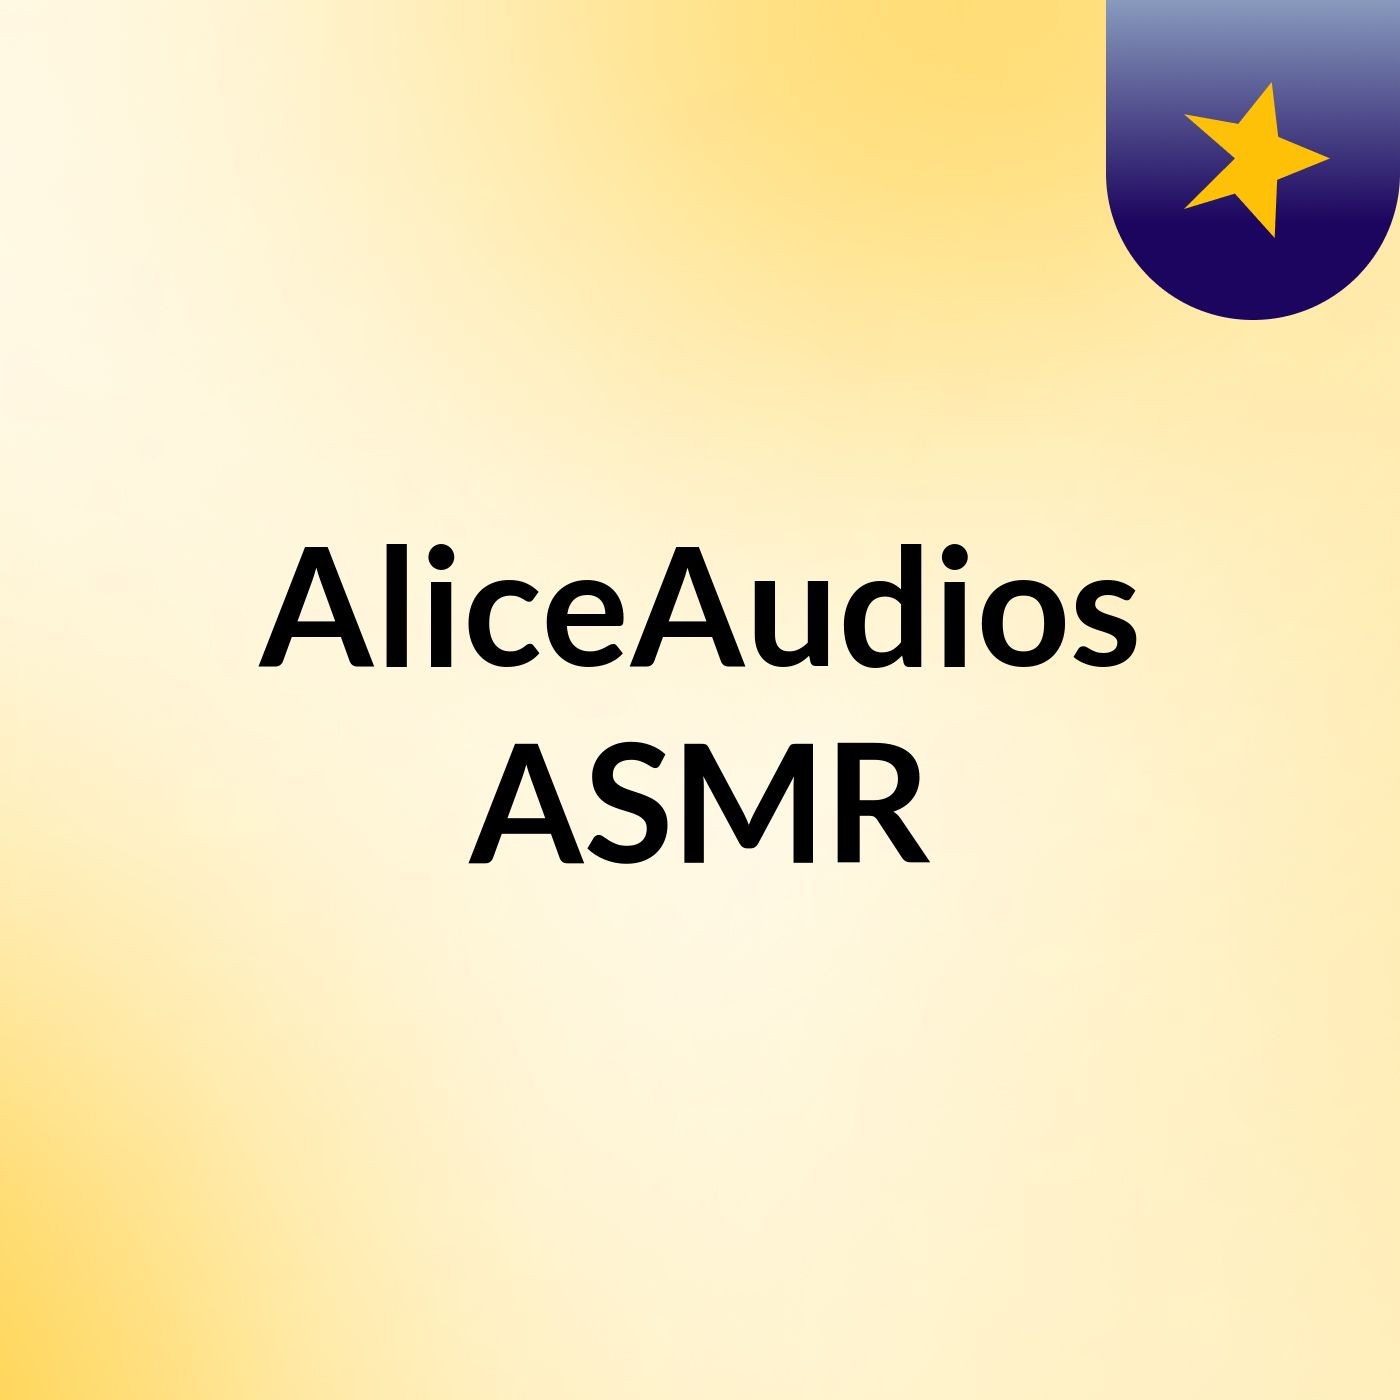 AliceAudios ASMR